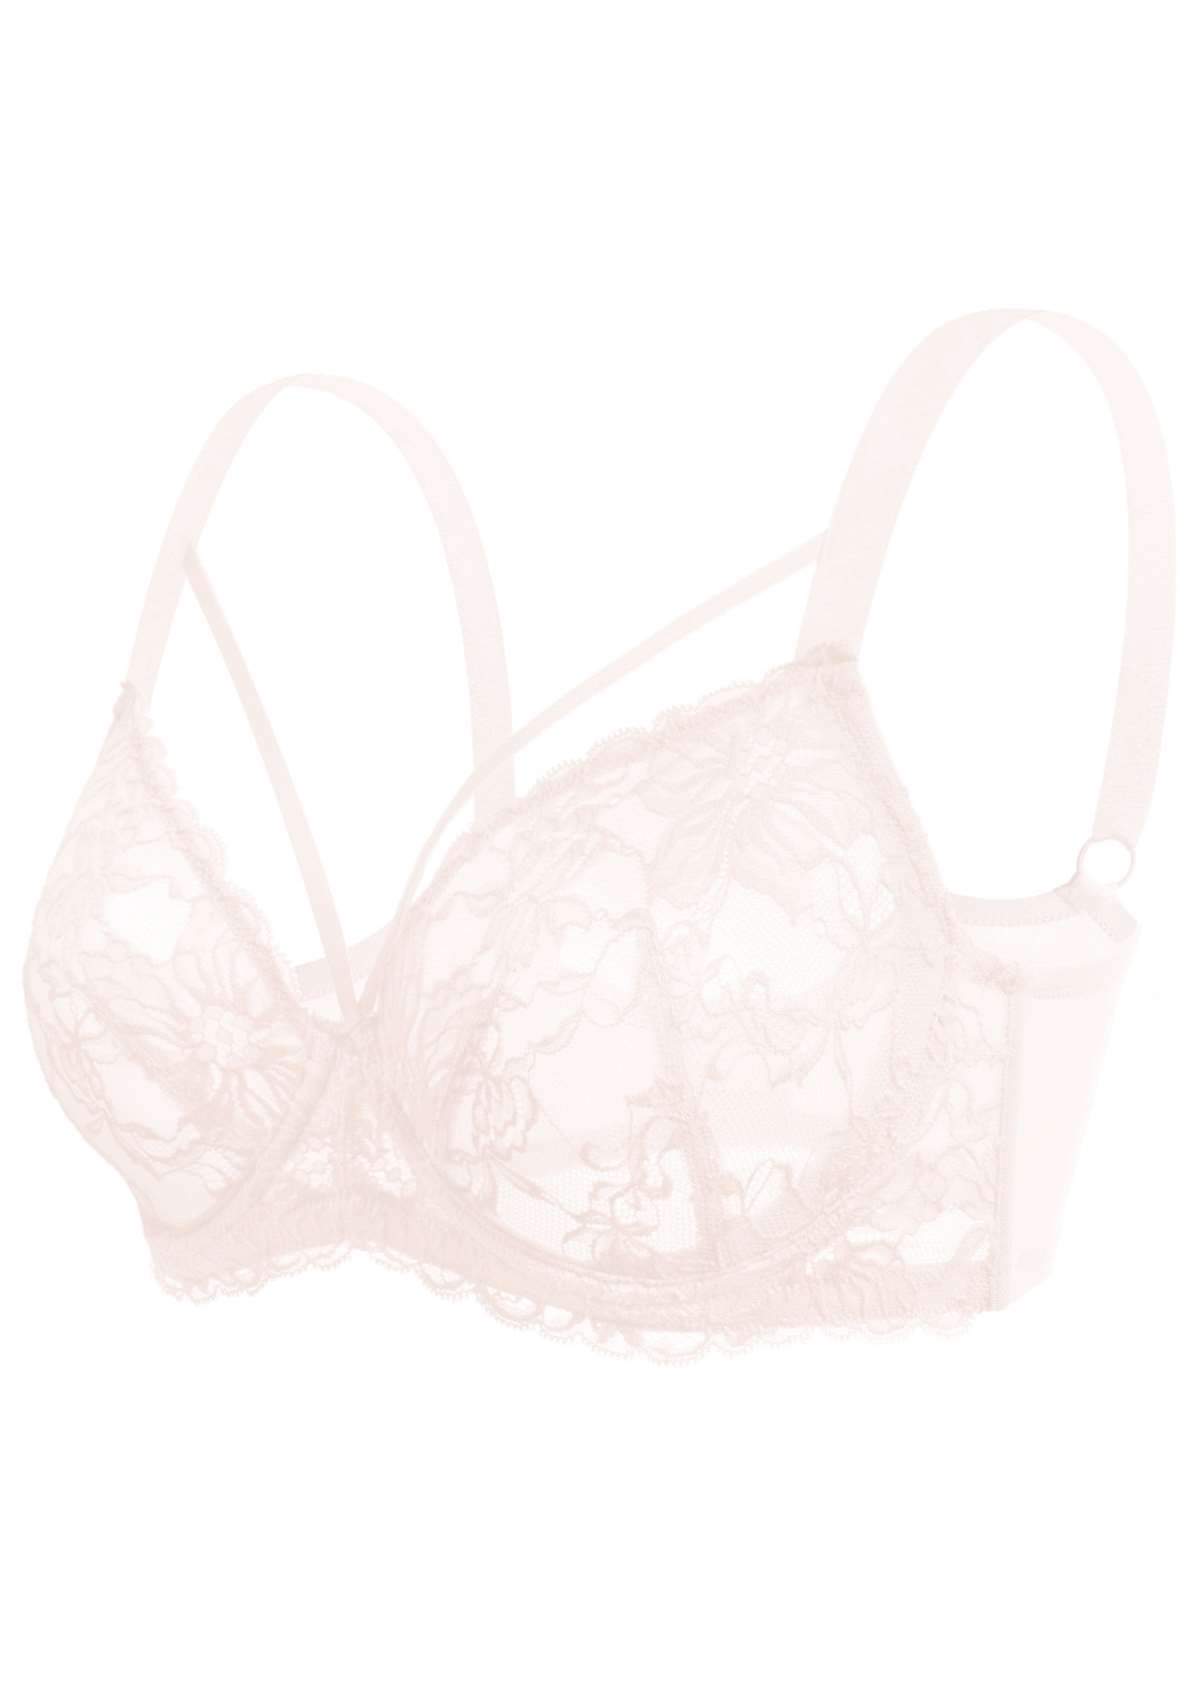 HSIA Pretty In Petals Underwire Lace Bra: No Padding, Full Cup Bra - Pink / 34 / DDD/F